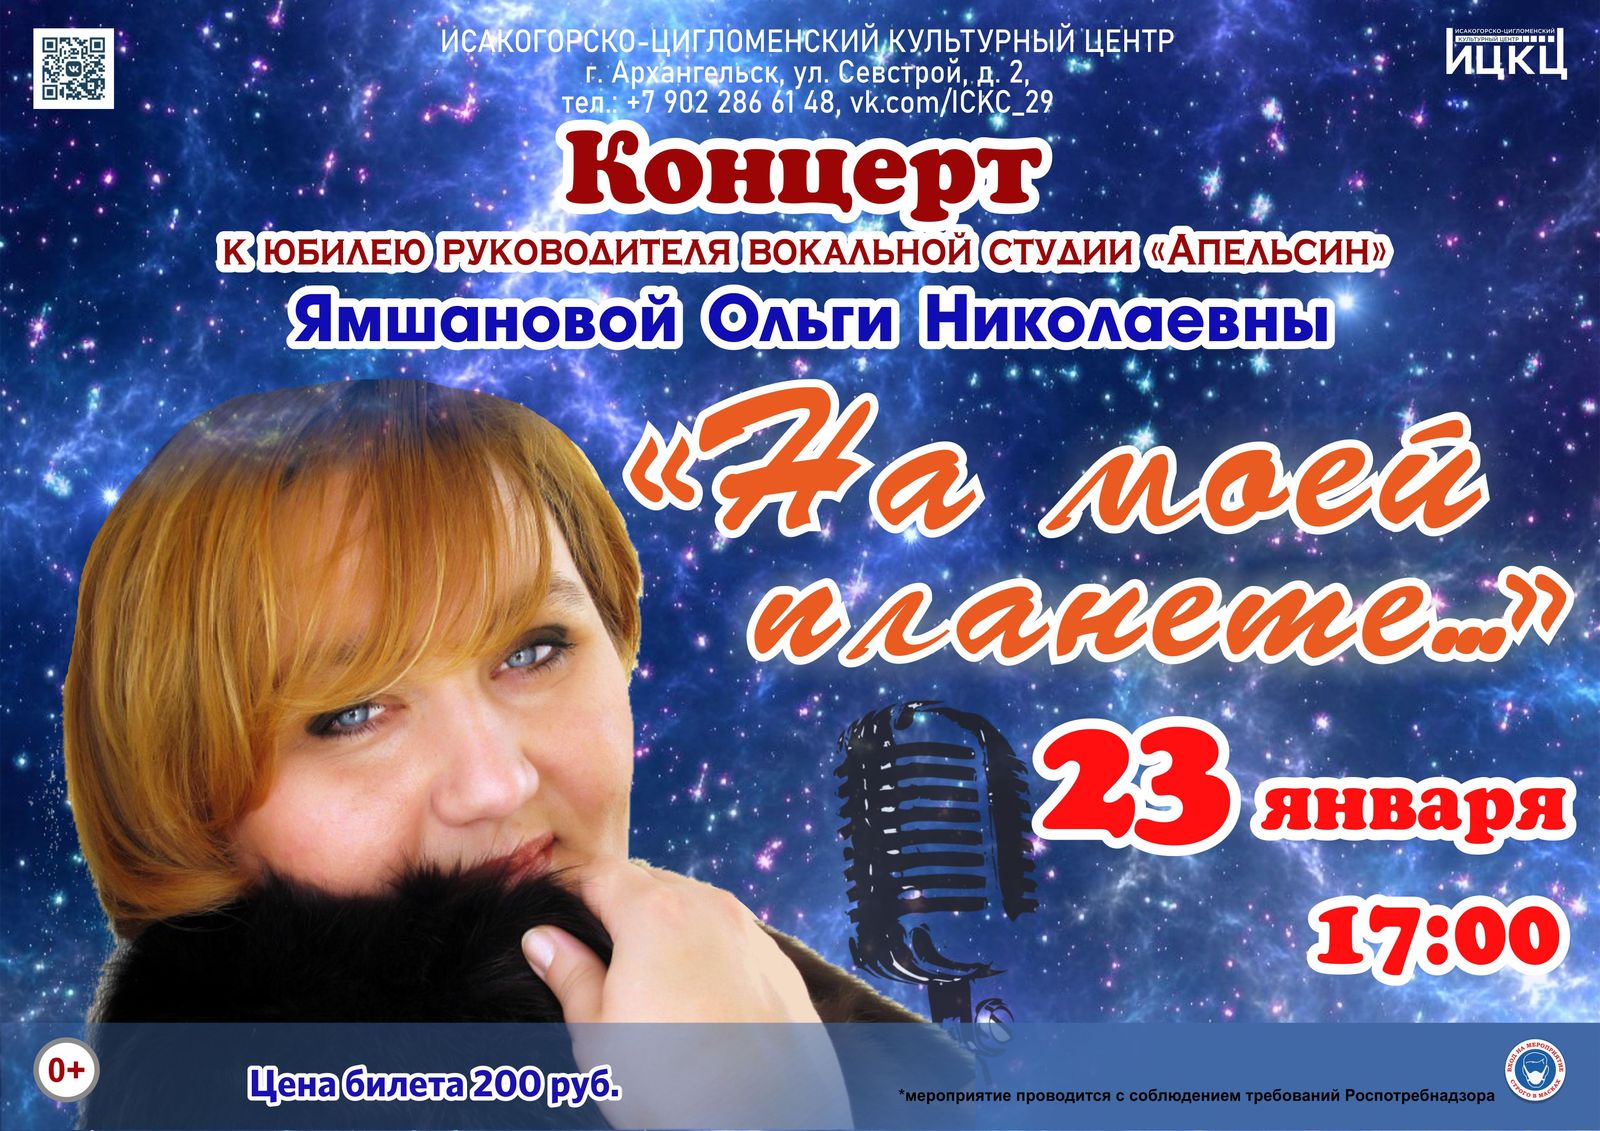 Концерт к юбилею руководителя вокальной студии «Апельсин» Ямшановой Ольги Николаевны «На моей планете…»